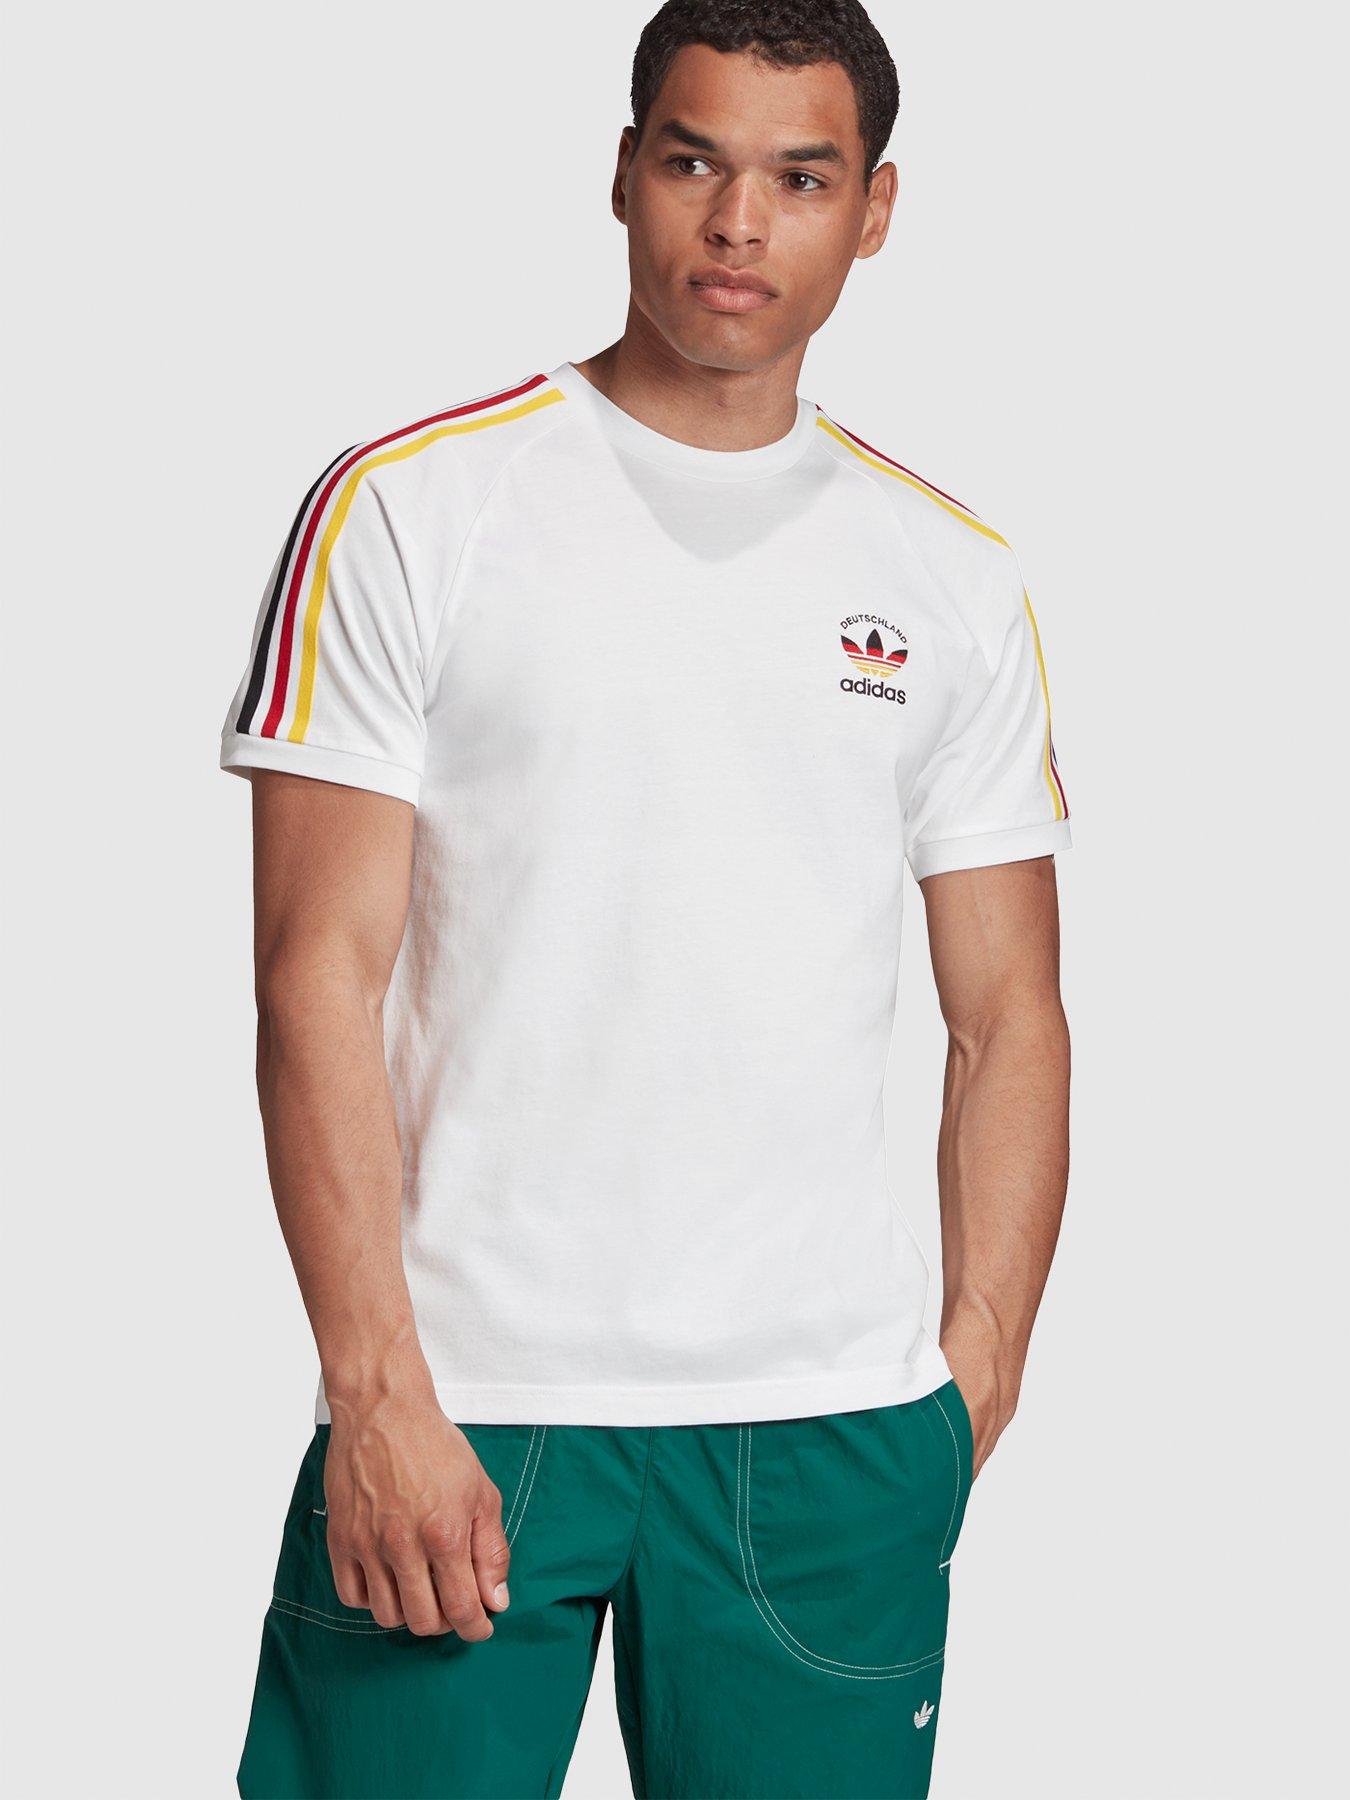 adidas shirt deutschland